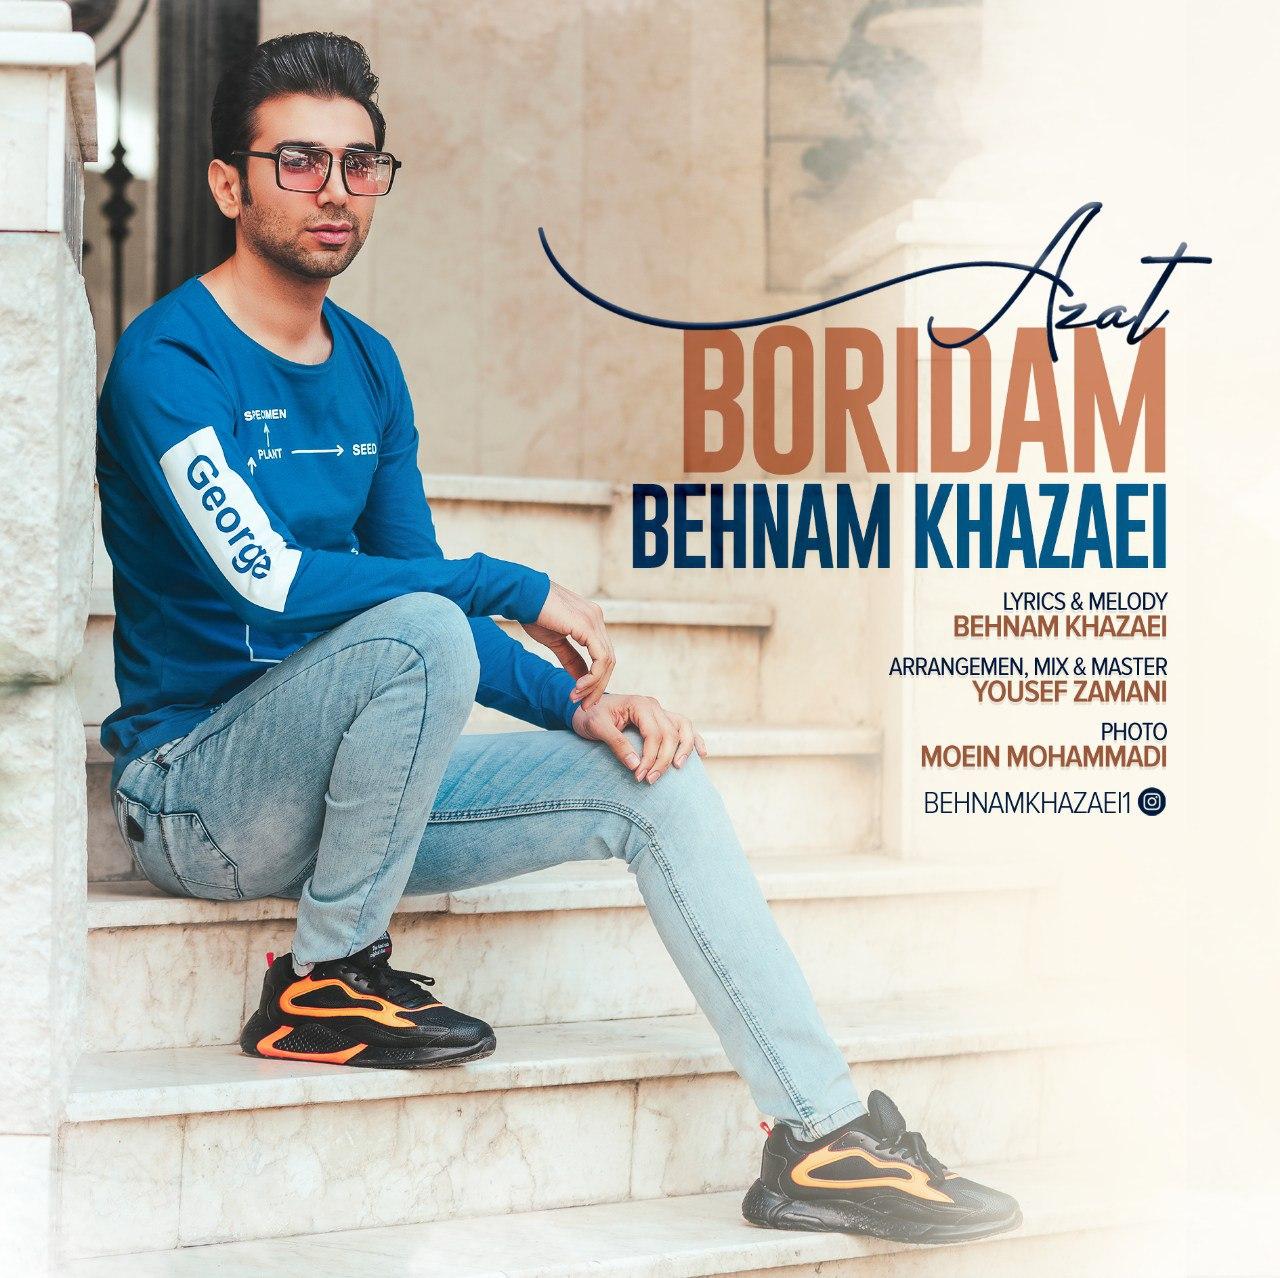 Behnam Khazaei – Azat Boridam